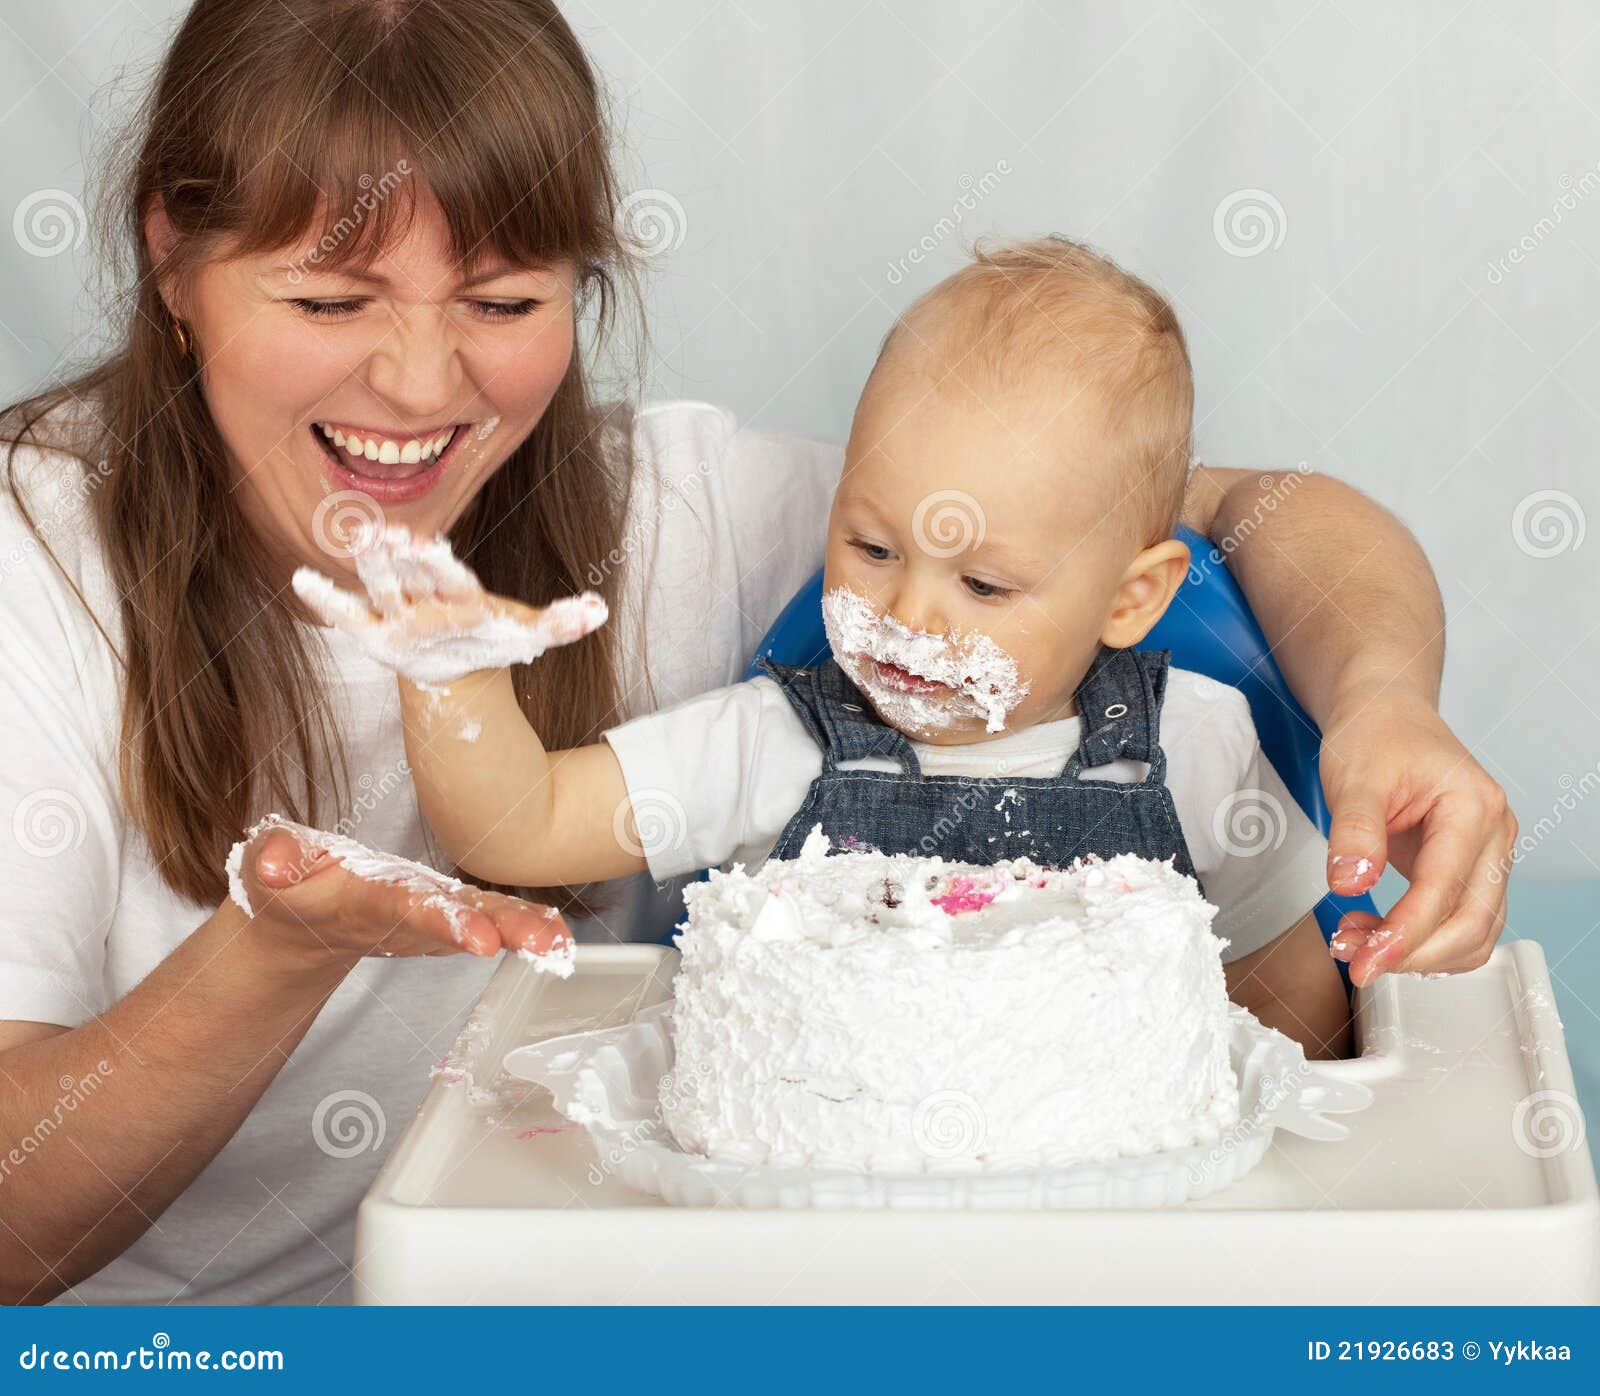 Можно кормящим торт. Мама ест торт. Малыш ест торт. Ребенок ест торт. Фотосессии мамы с сыном с тортом.